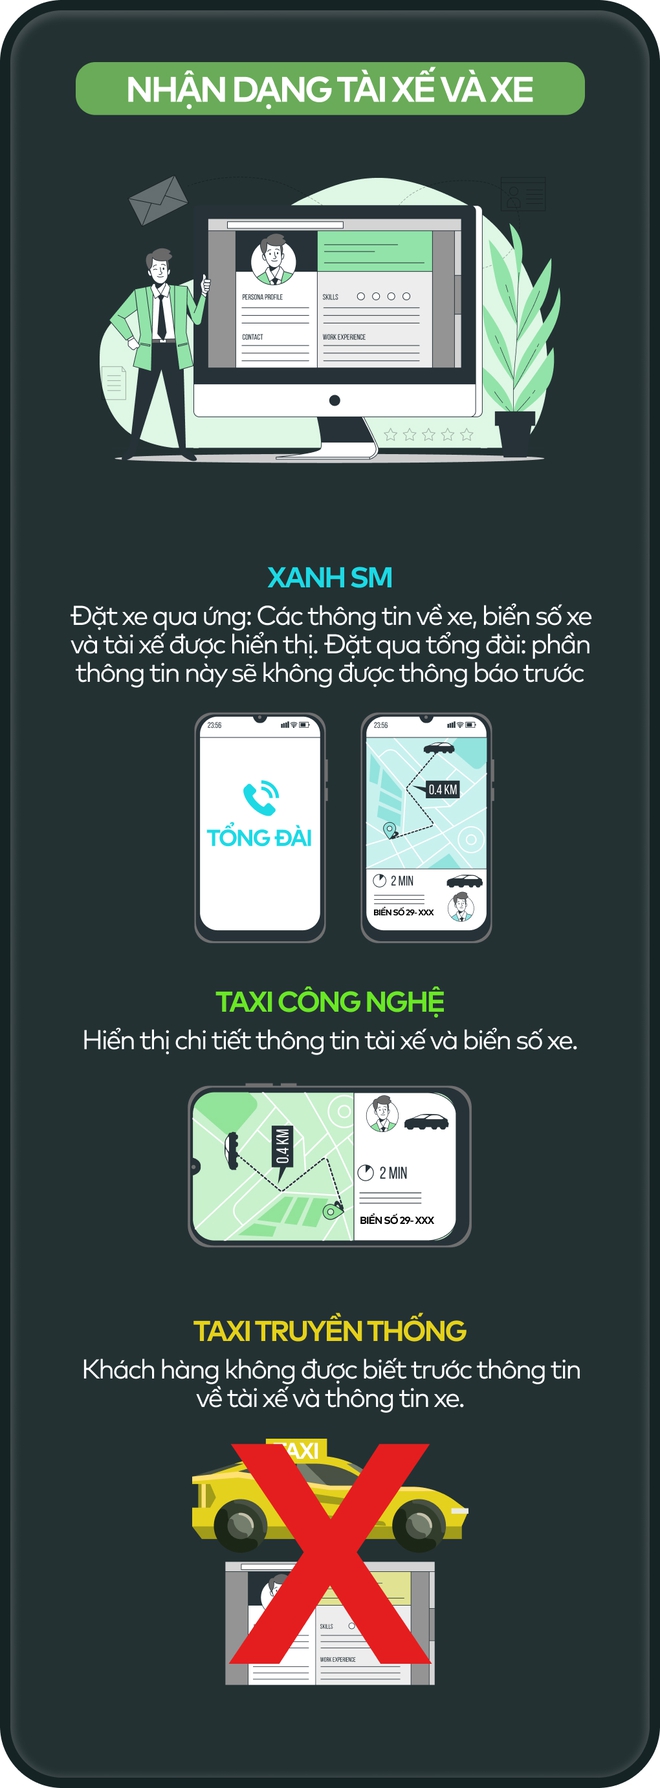 Infographic: So sánh taxi Xanh SM, taxi công nghệ và taxi truyền thống - Ảnh 5.